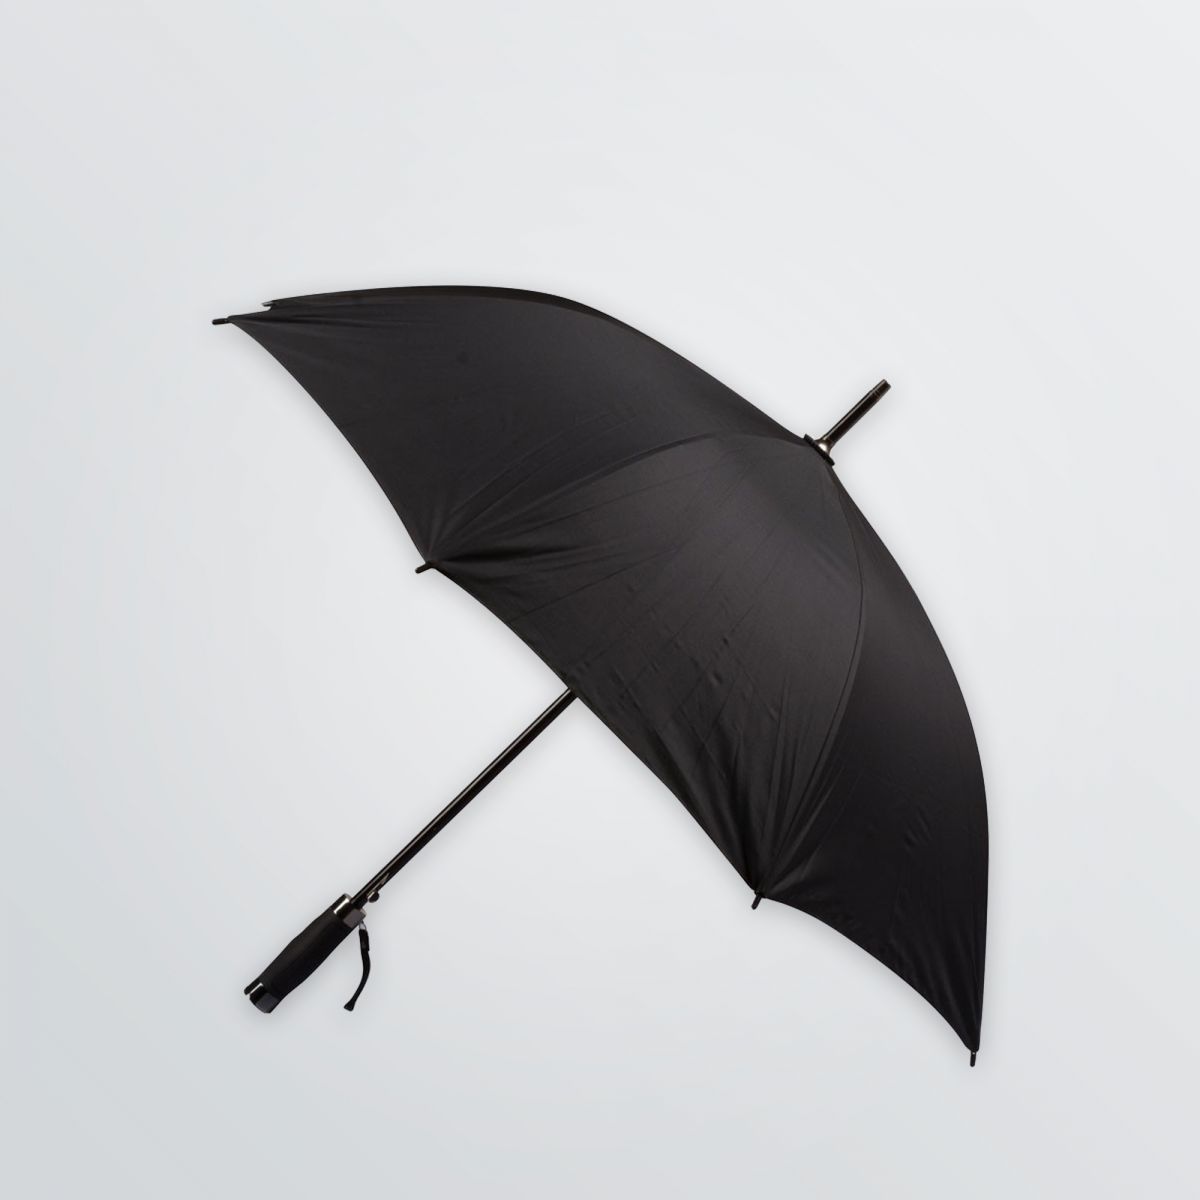 Regenschirm in schwarz ohne Werbeanbringung mit gerader Soft-Touch-Kunststoffgriff und automatischer Oeffnung